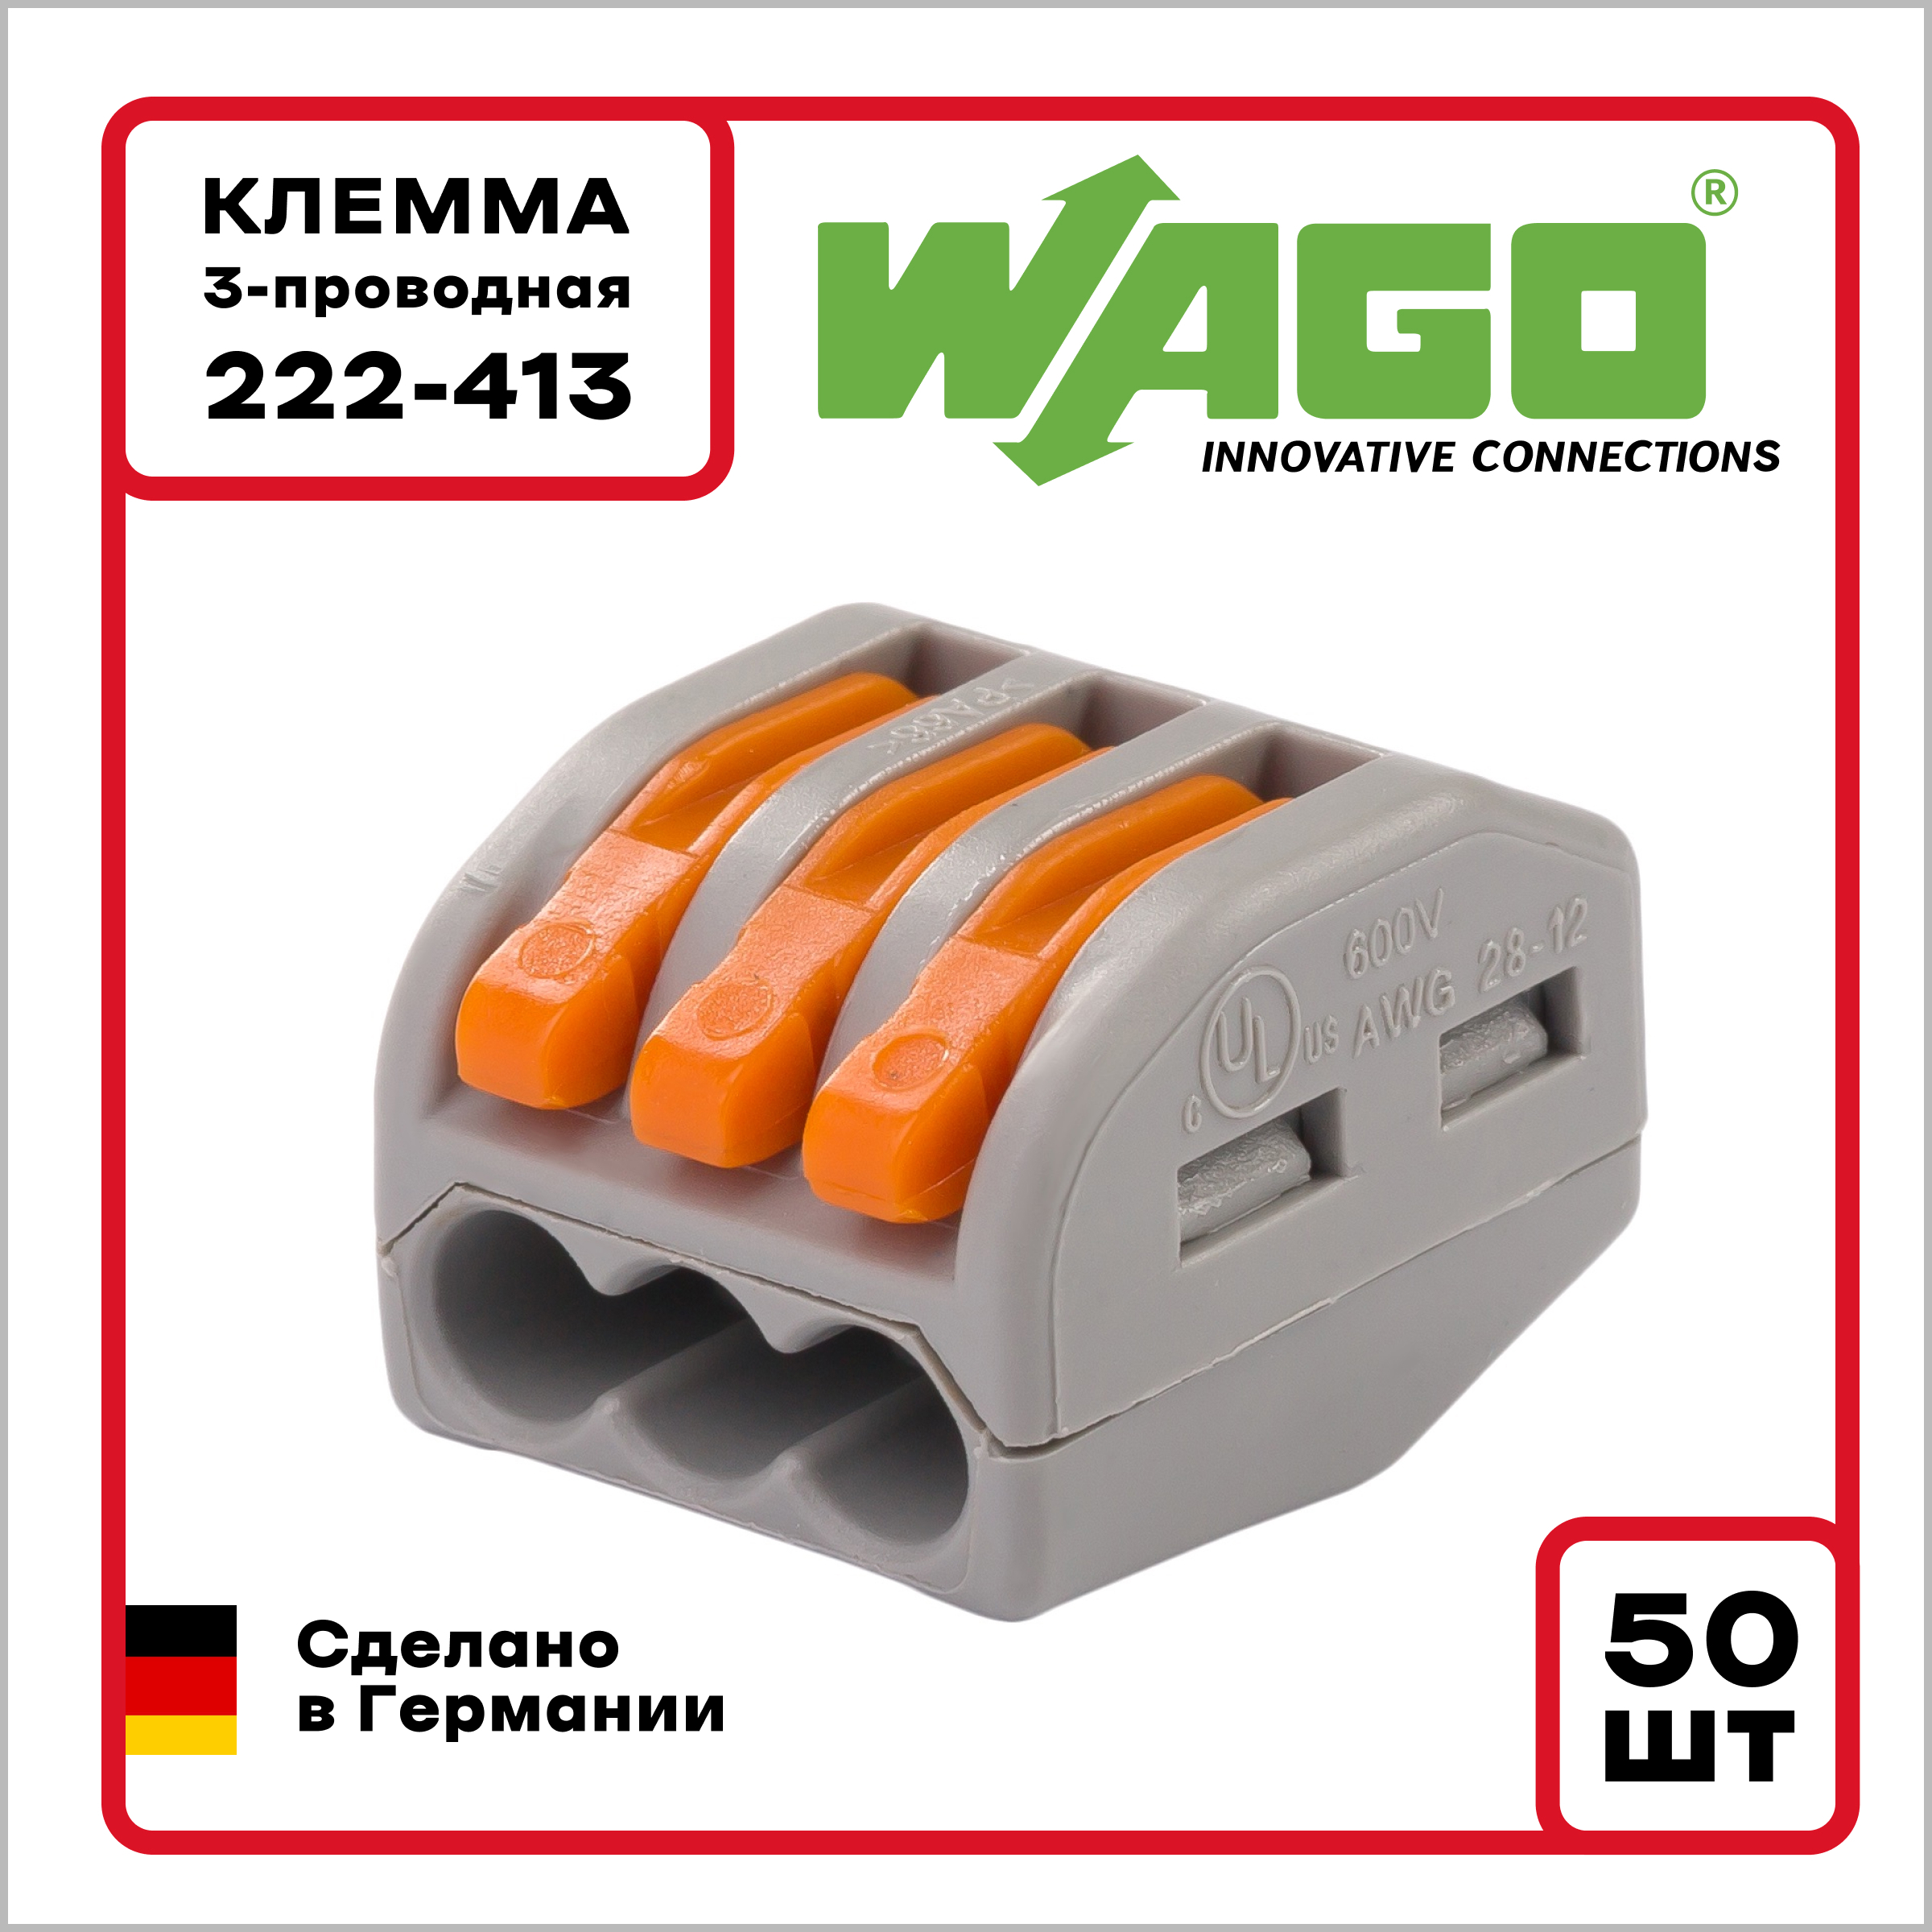  Wago Оригинал 3-проводная 222-413 50 шт по цене 35218 ₽/шт .